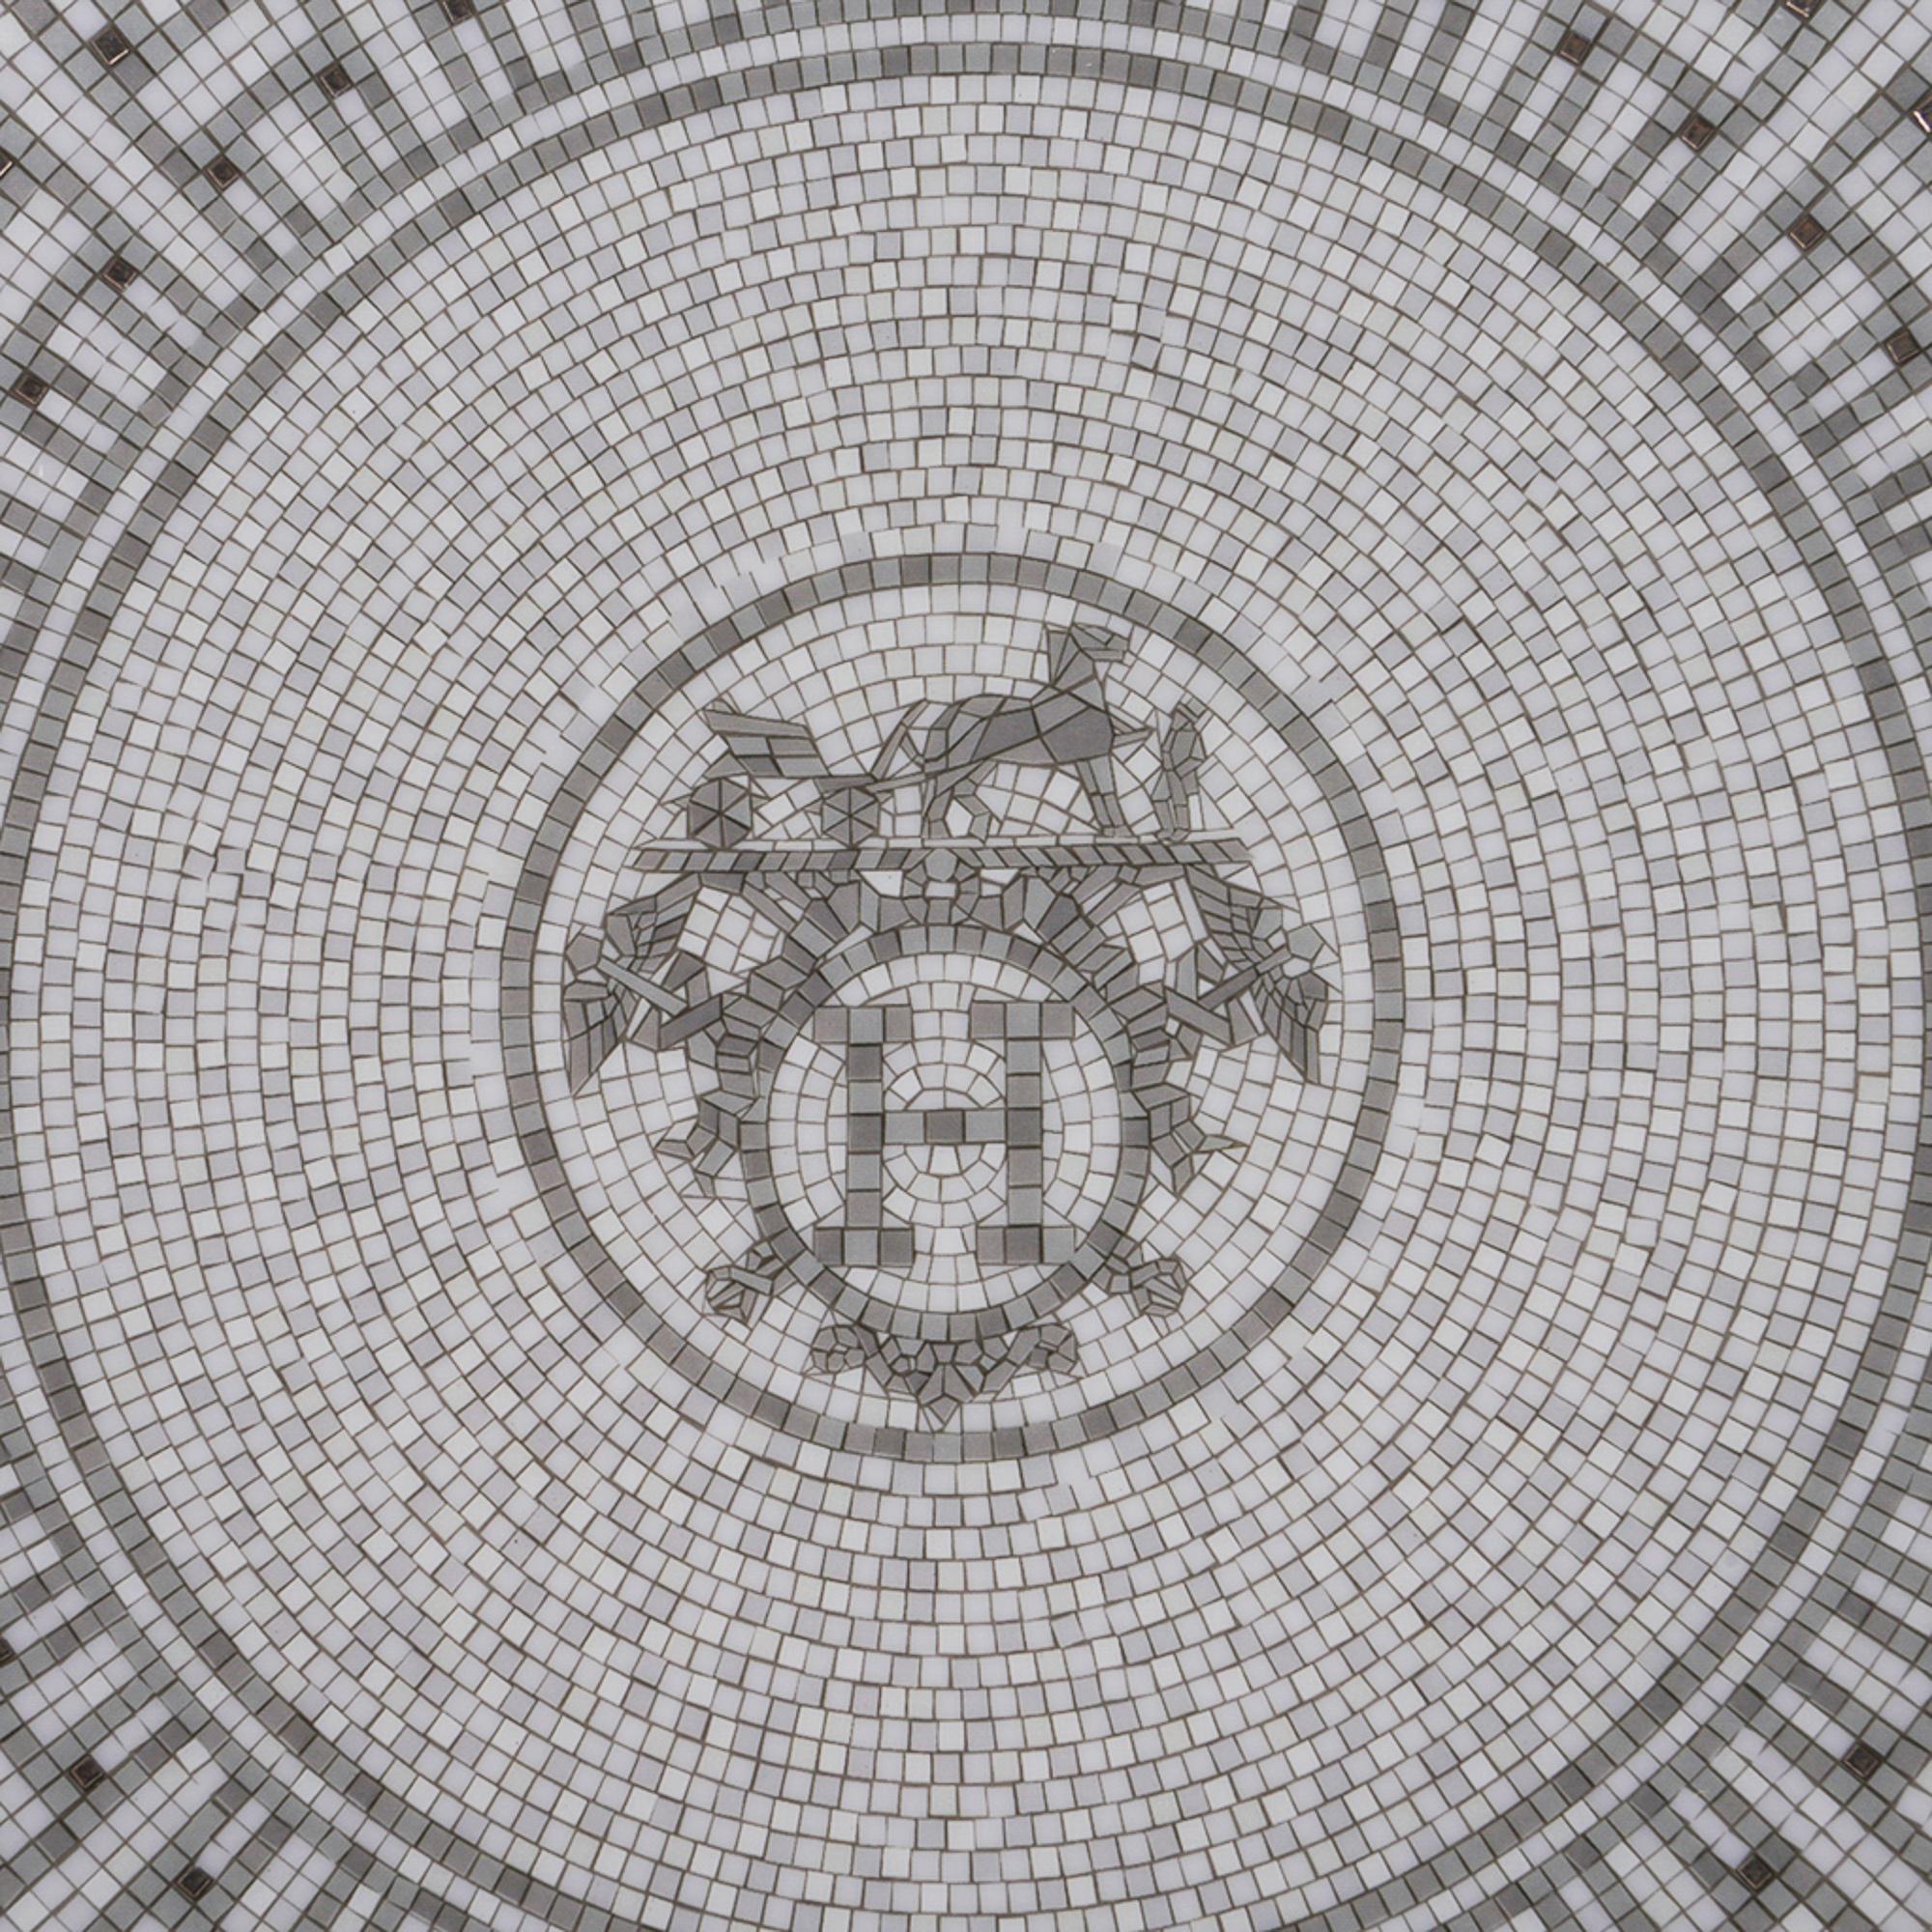 Mightychic bietet einen Hermes Mosaique Au 24 Platinum Dessertteller 2er-Set aus Porzellan an.
Das Mosaikmotiv spiegelt den Mosaikboden im Eingangsbereich des Flagshipstores 24 Faubourg St. Honore in Paris wider.
Für einen eleganten Tisch.
Wunderbar